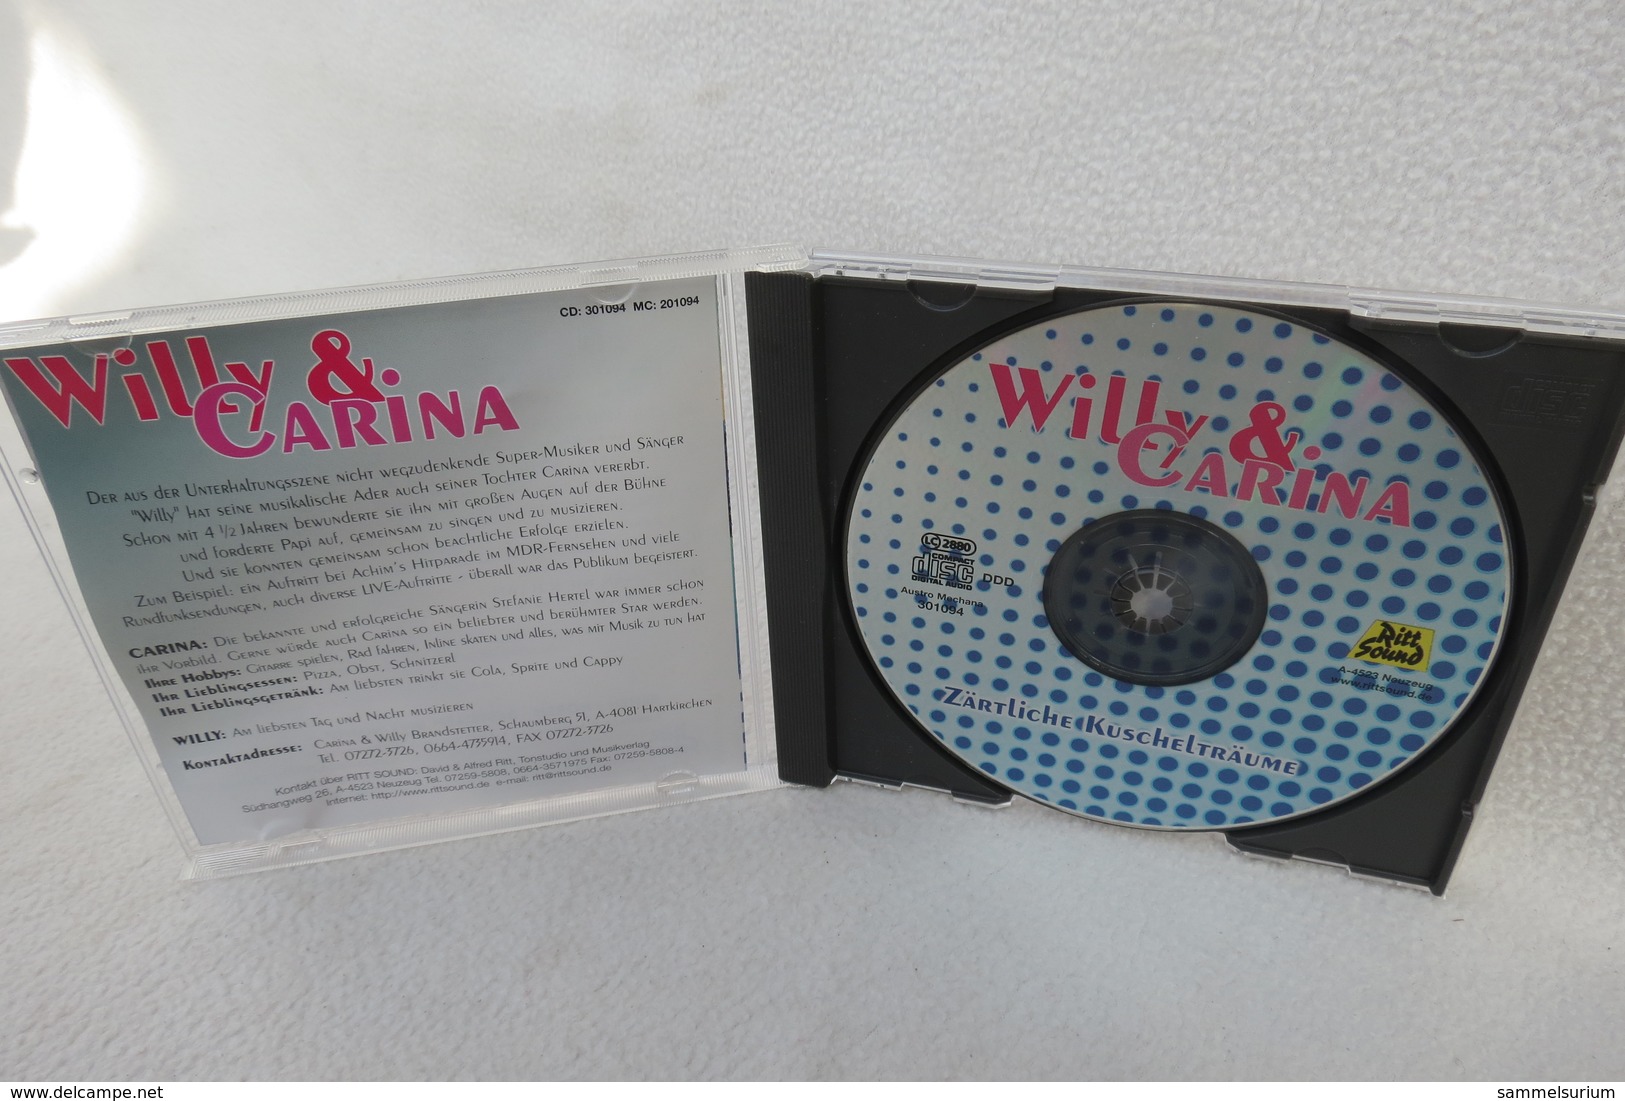 CD "Willy & Carina" Zärtliche Kuschelträume - Sonstige - Deutsche Musik